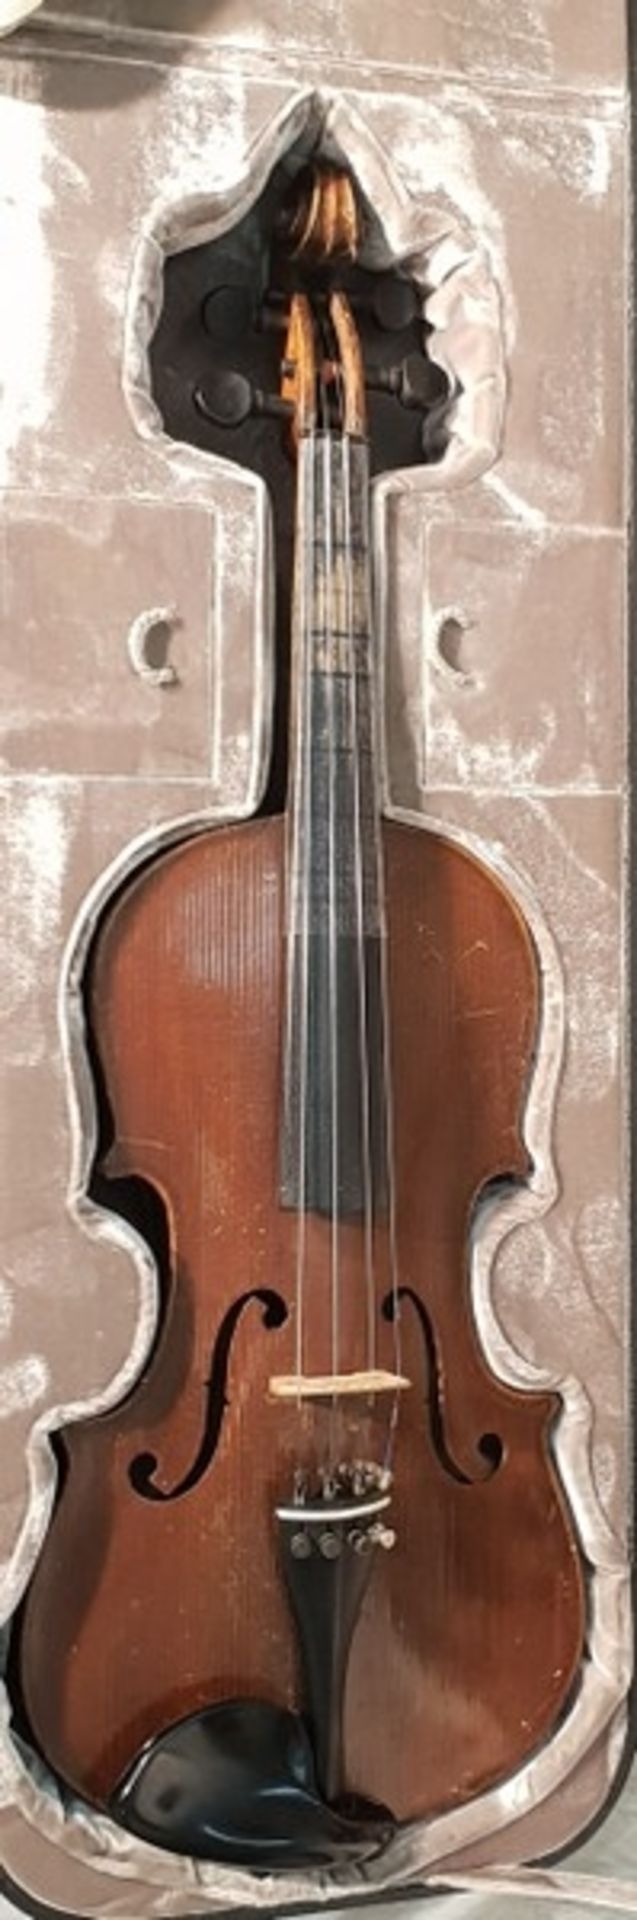 Original Jaeger Geigenkasten mit 4/4 Geige/Violine vermutlich Otto Jäger,< - Bild 2 aus 8